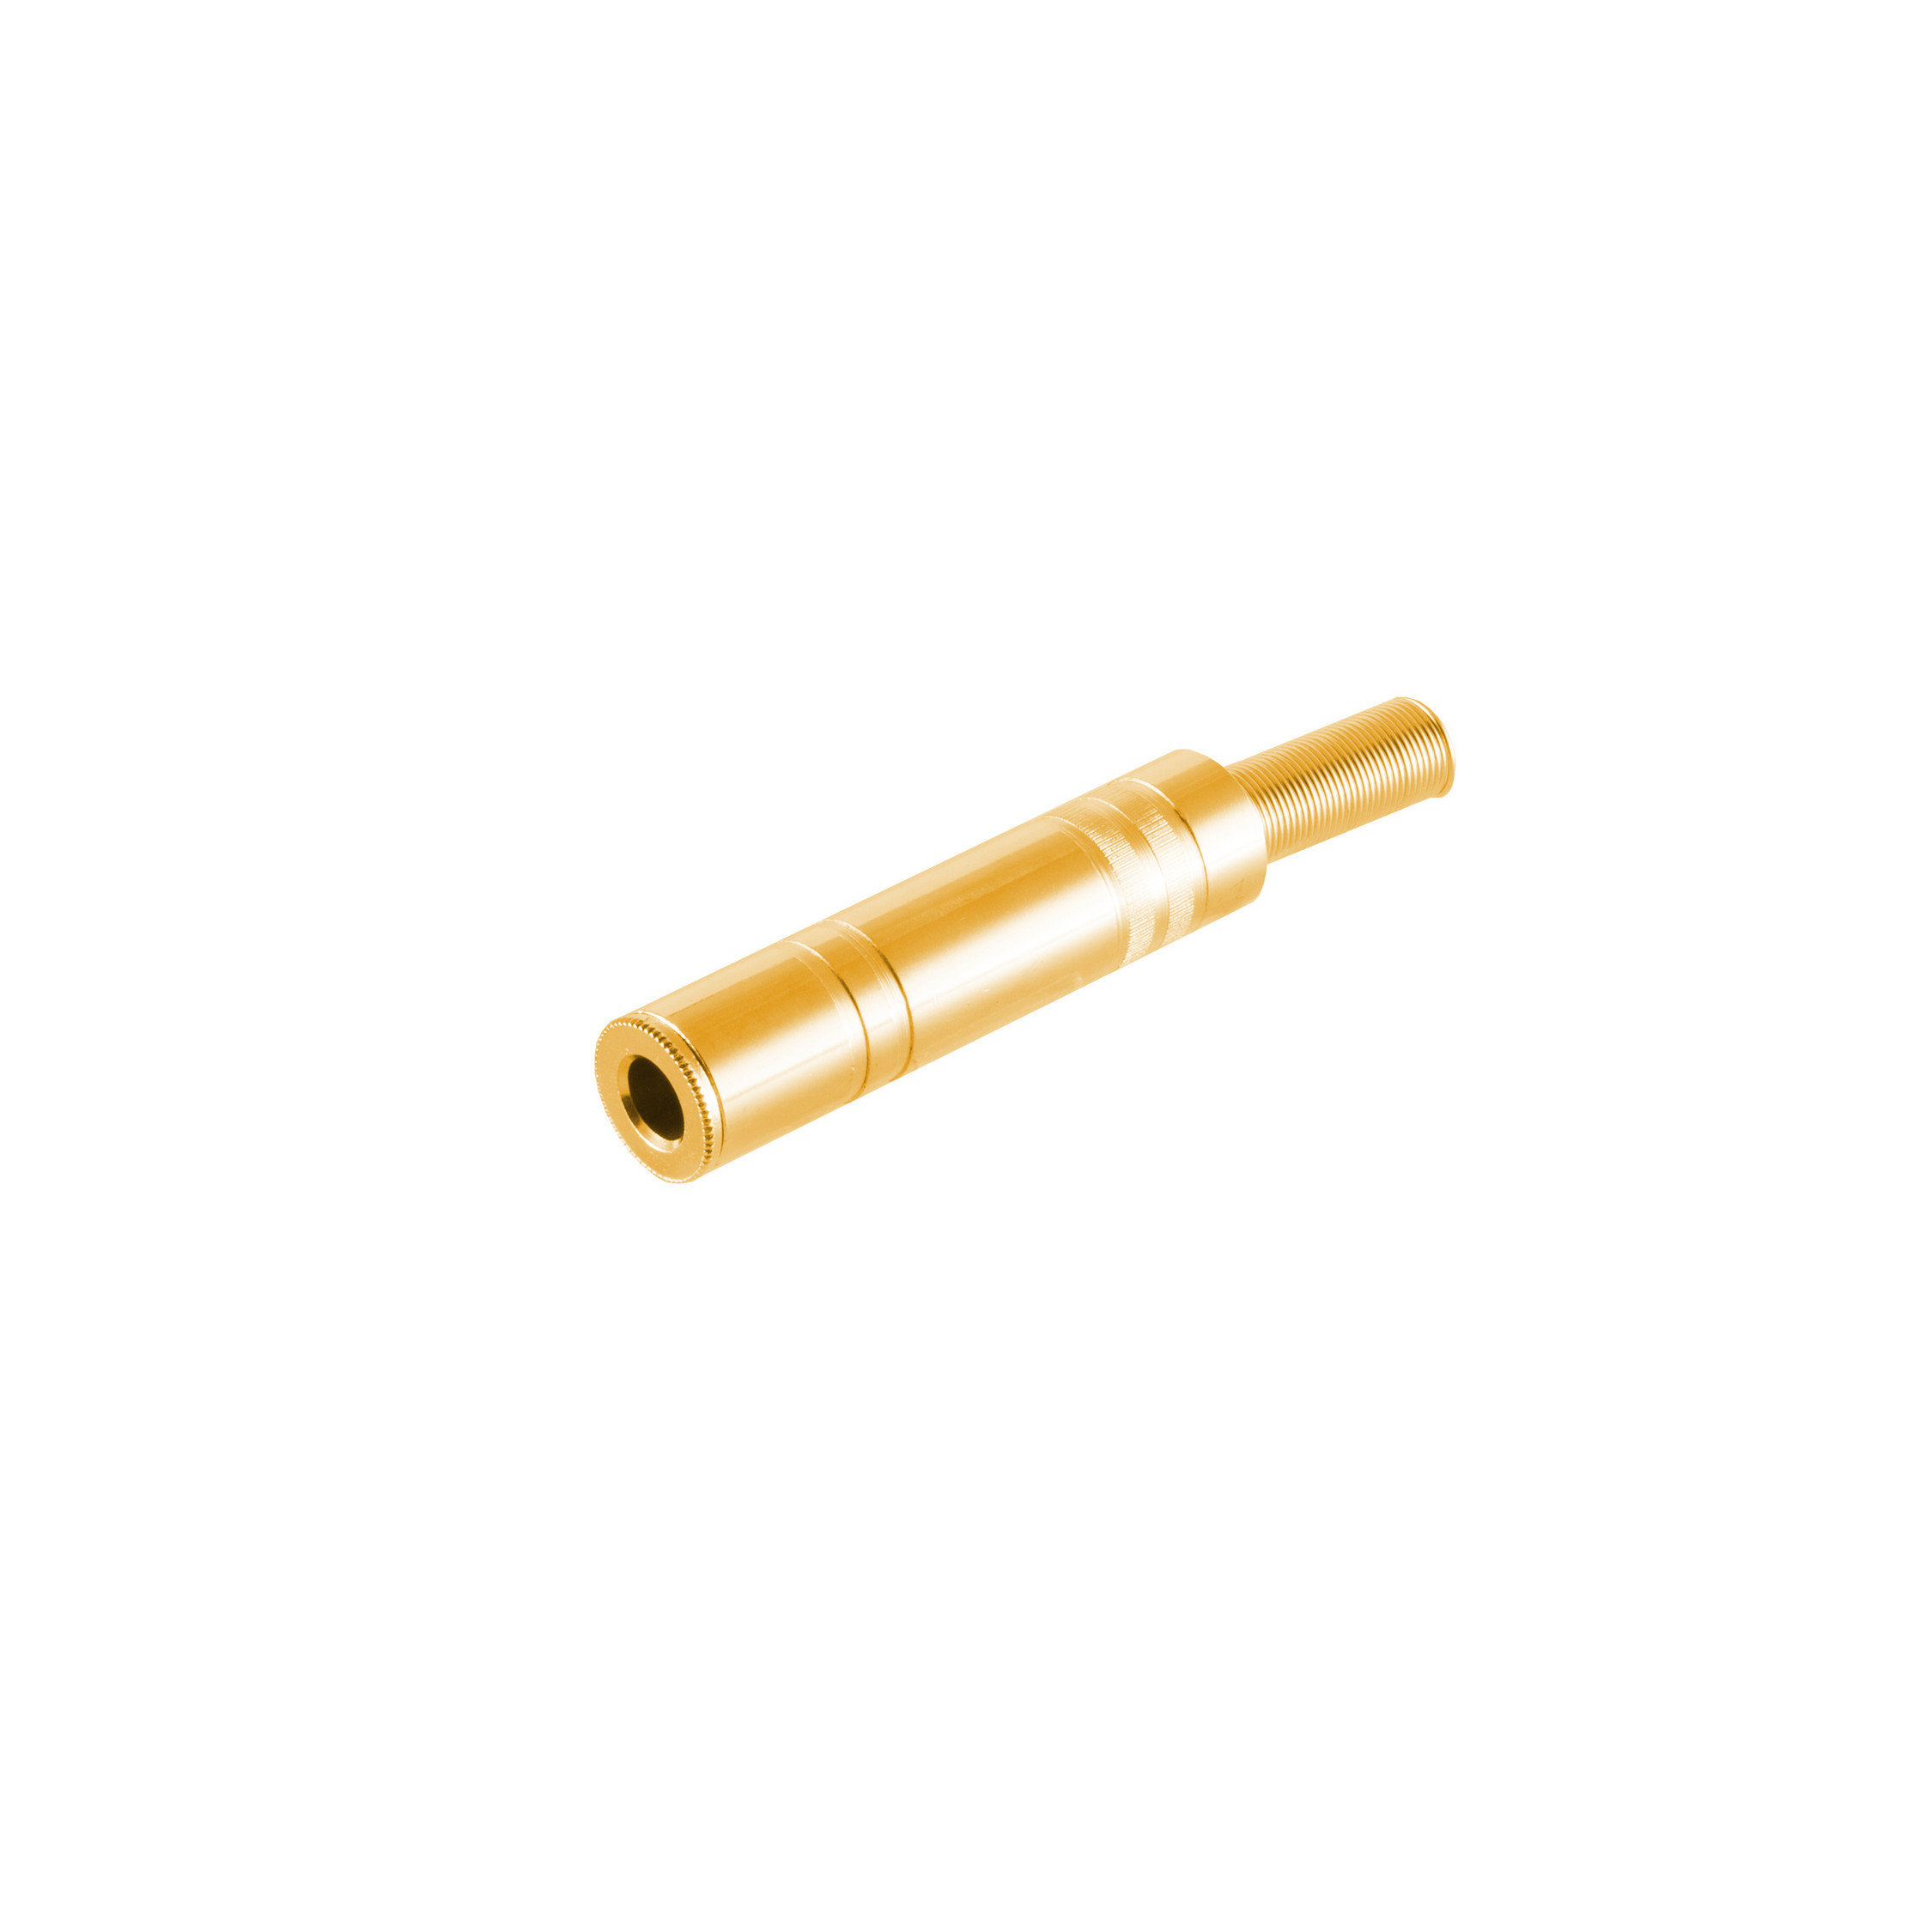 S/CONN MAXIMUM CONNECTIVITY Klinke Klinkenkupplung vergoldet 6,3mm, Metall, Stereo